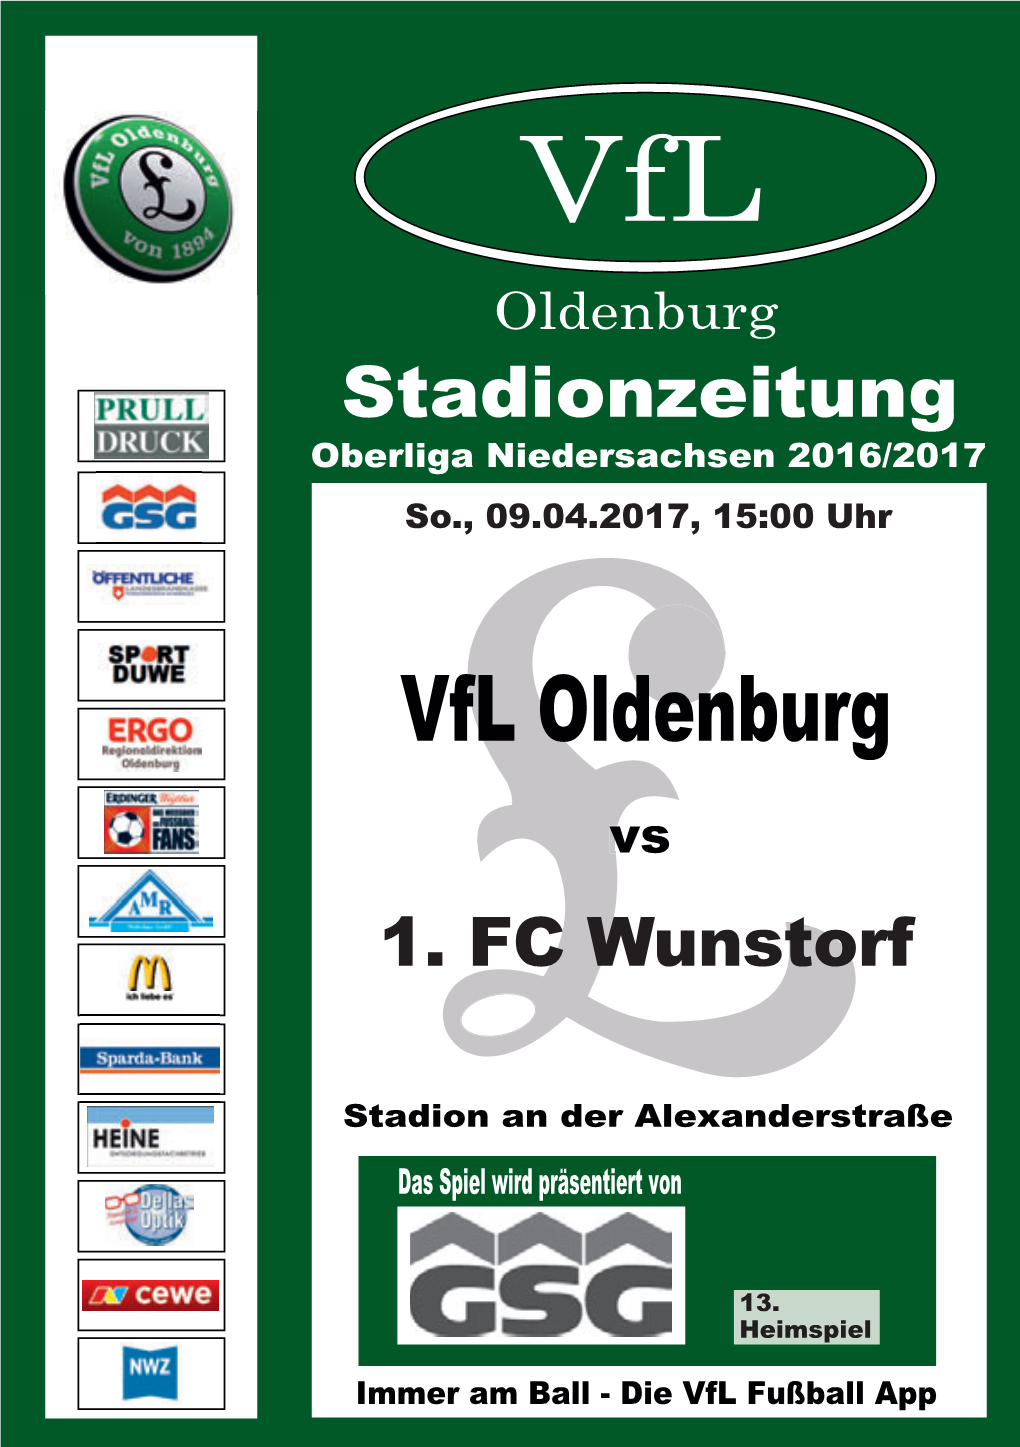 Vfl Oldenburg Stadionzeitung Oberliga Niedersachsen 2016/2017 So., 09.04.2017, 15:00 Uhr